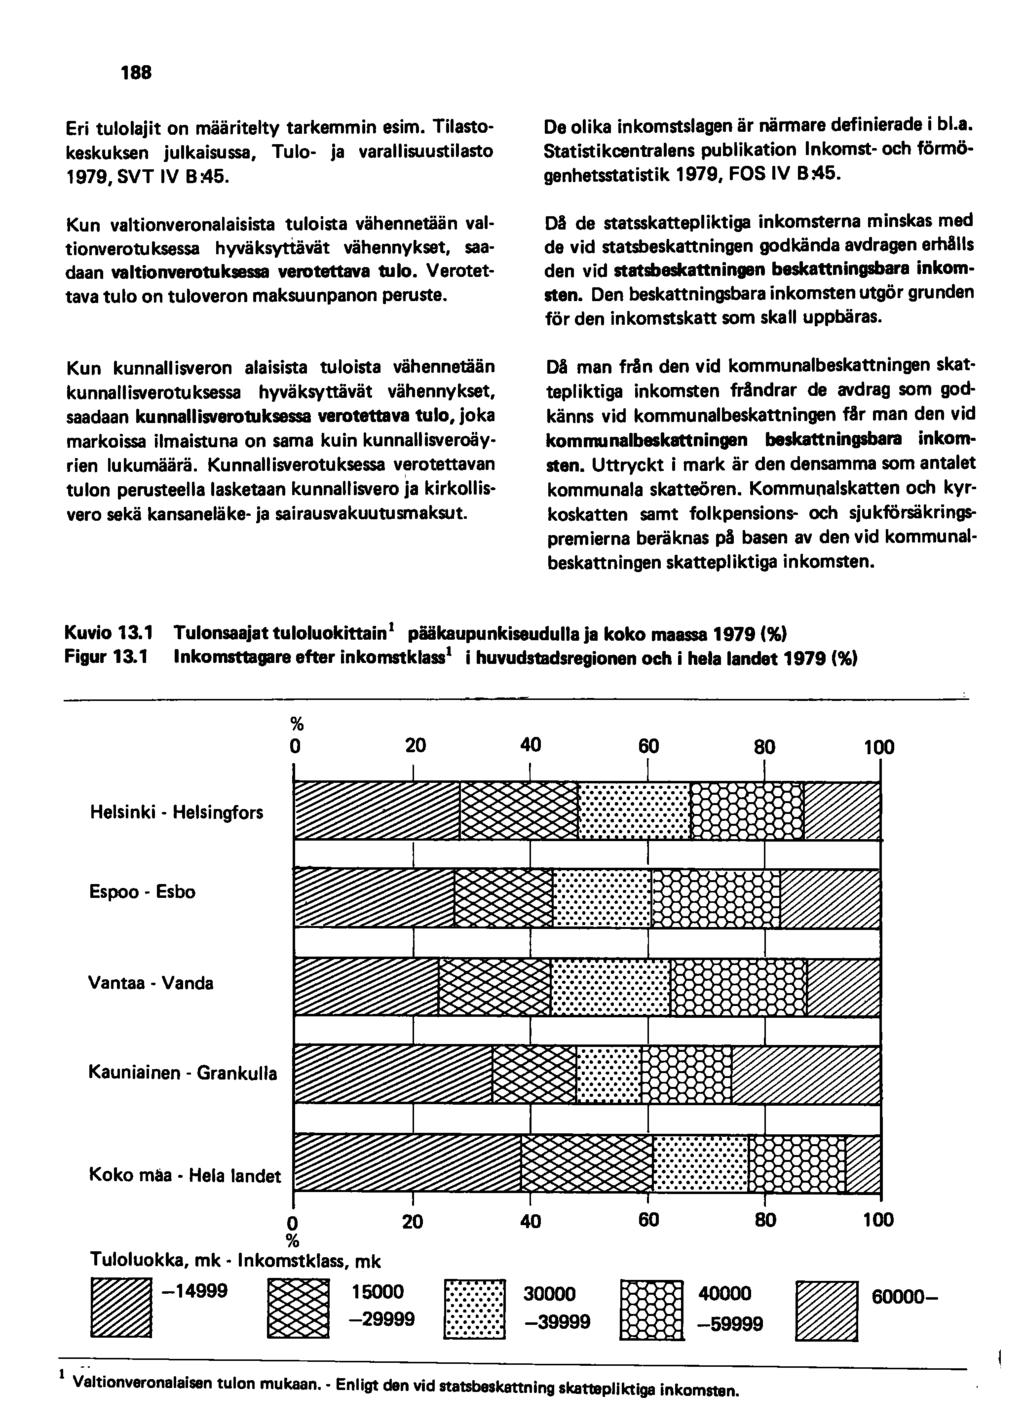 188 Eri tulolajit on määritelty tarkemmin esim. Tilastokeskuksen julkaisussa, Tulo- ja varallisuustilasto 1979, SVT IV 8:45.